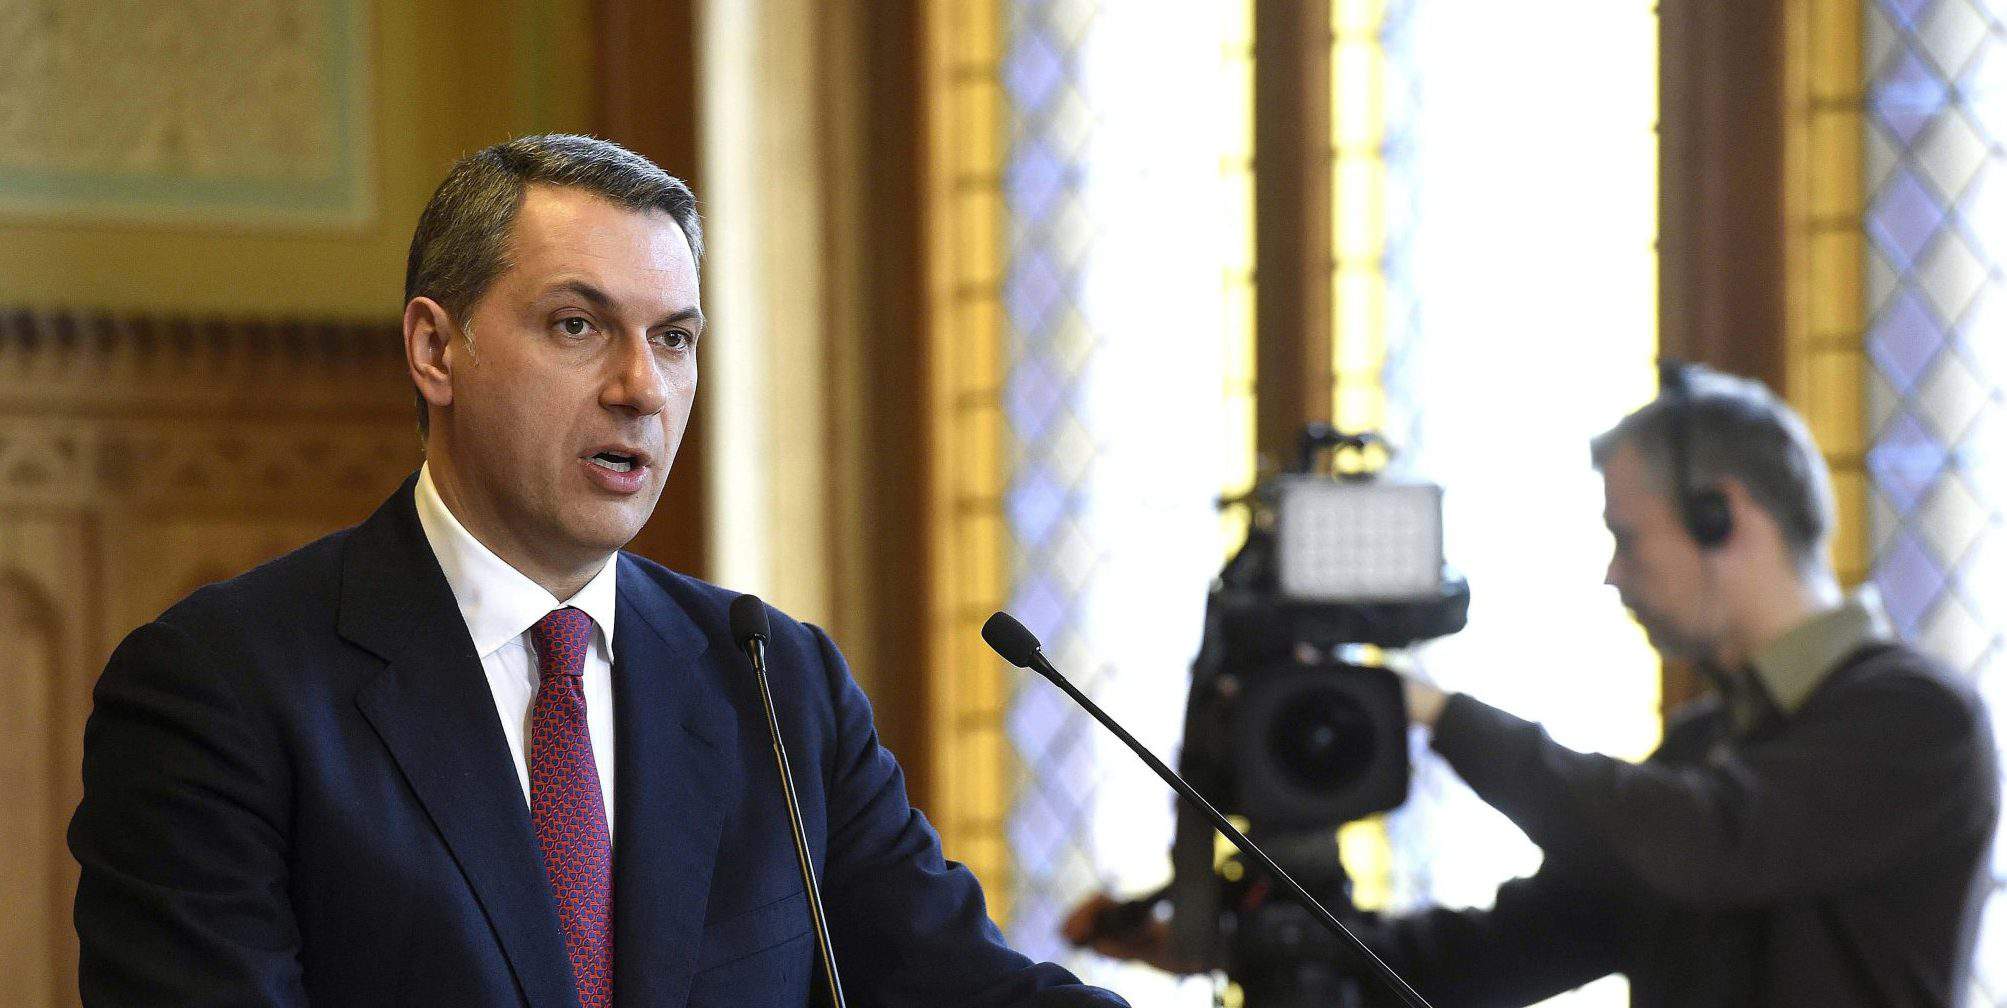 lázár jános ministro del governo ungherese